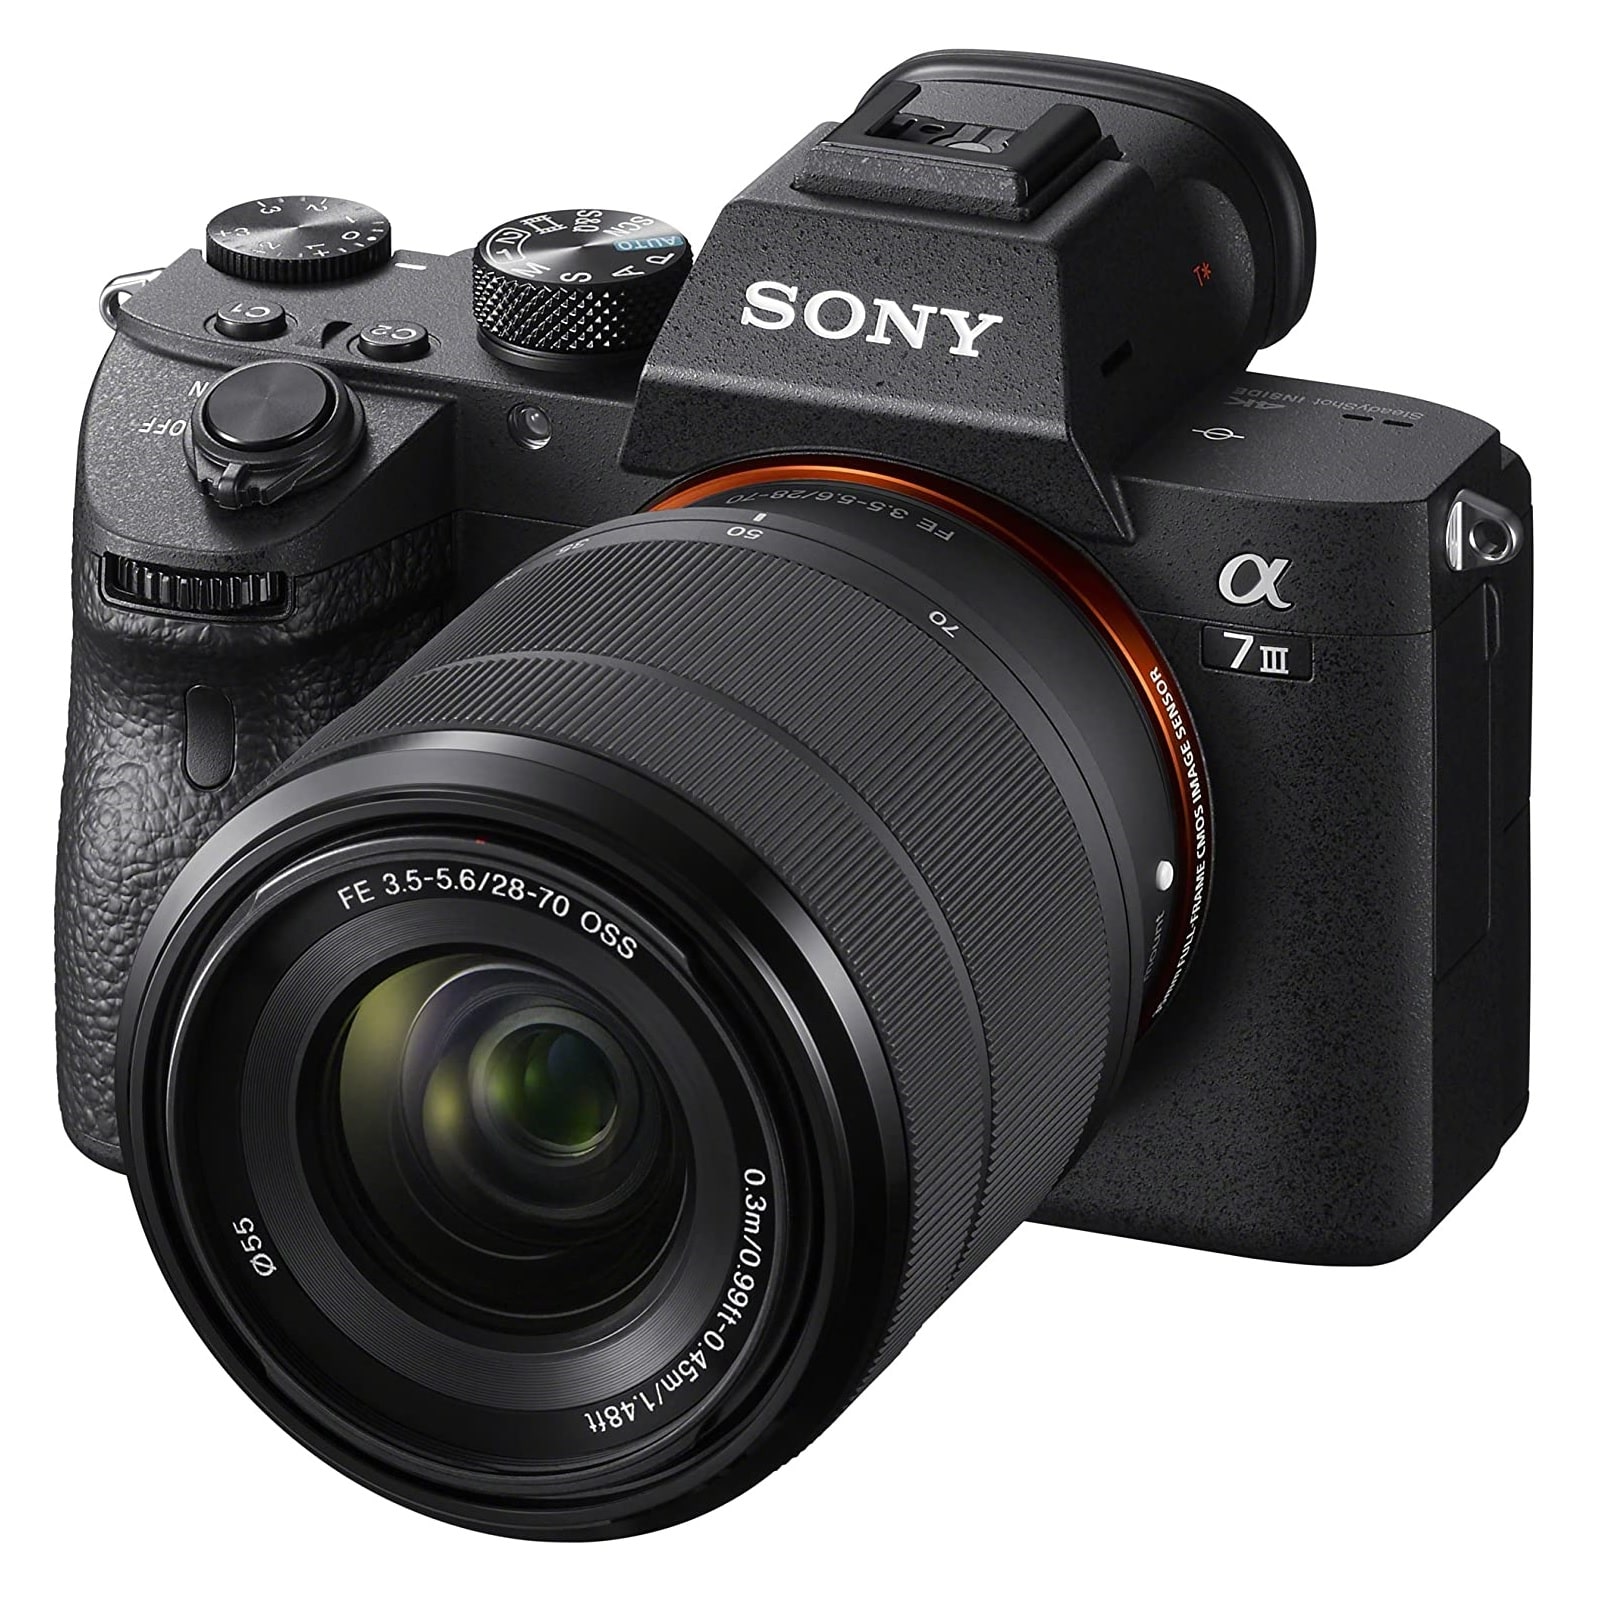 Беззеркальный фотоаппарат Sony Alpha A7 Mark III, 28-70mm, f/3.5-5.6, черный цена и фото